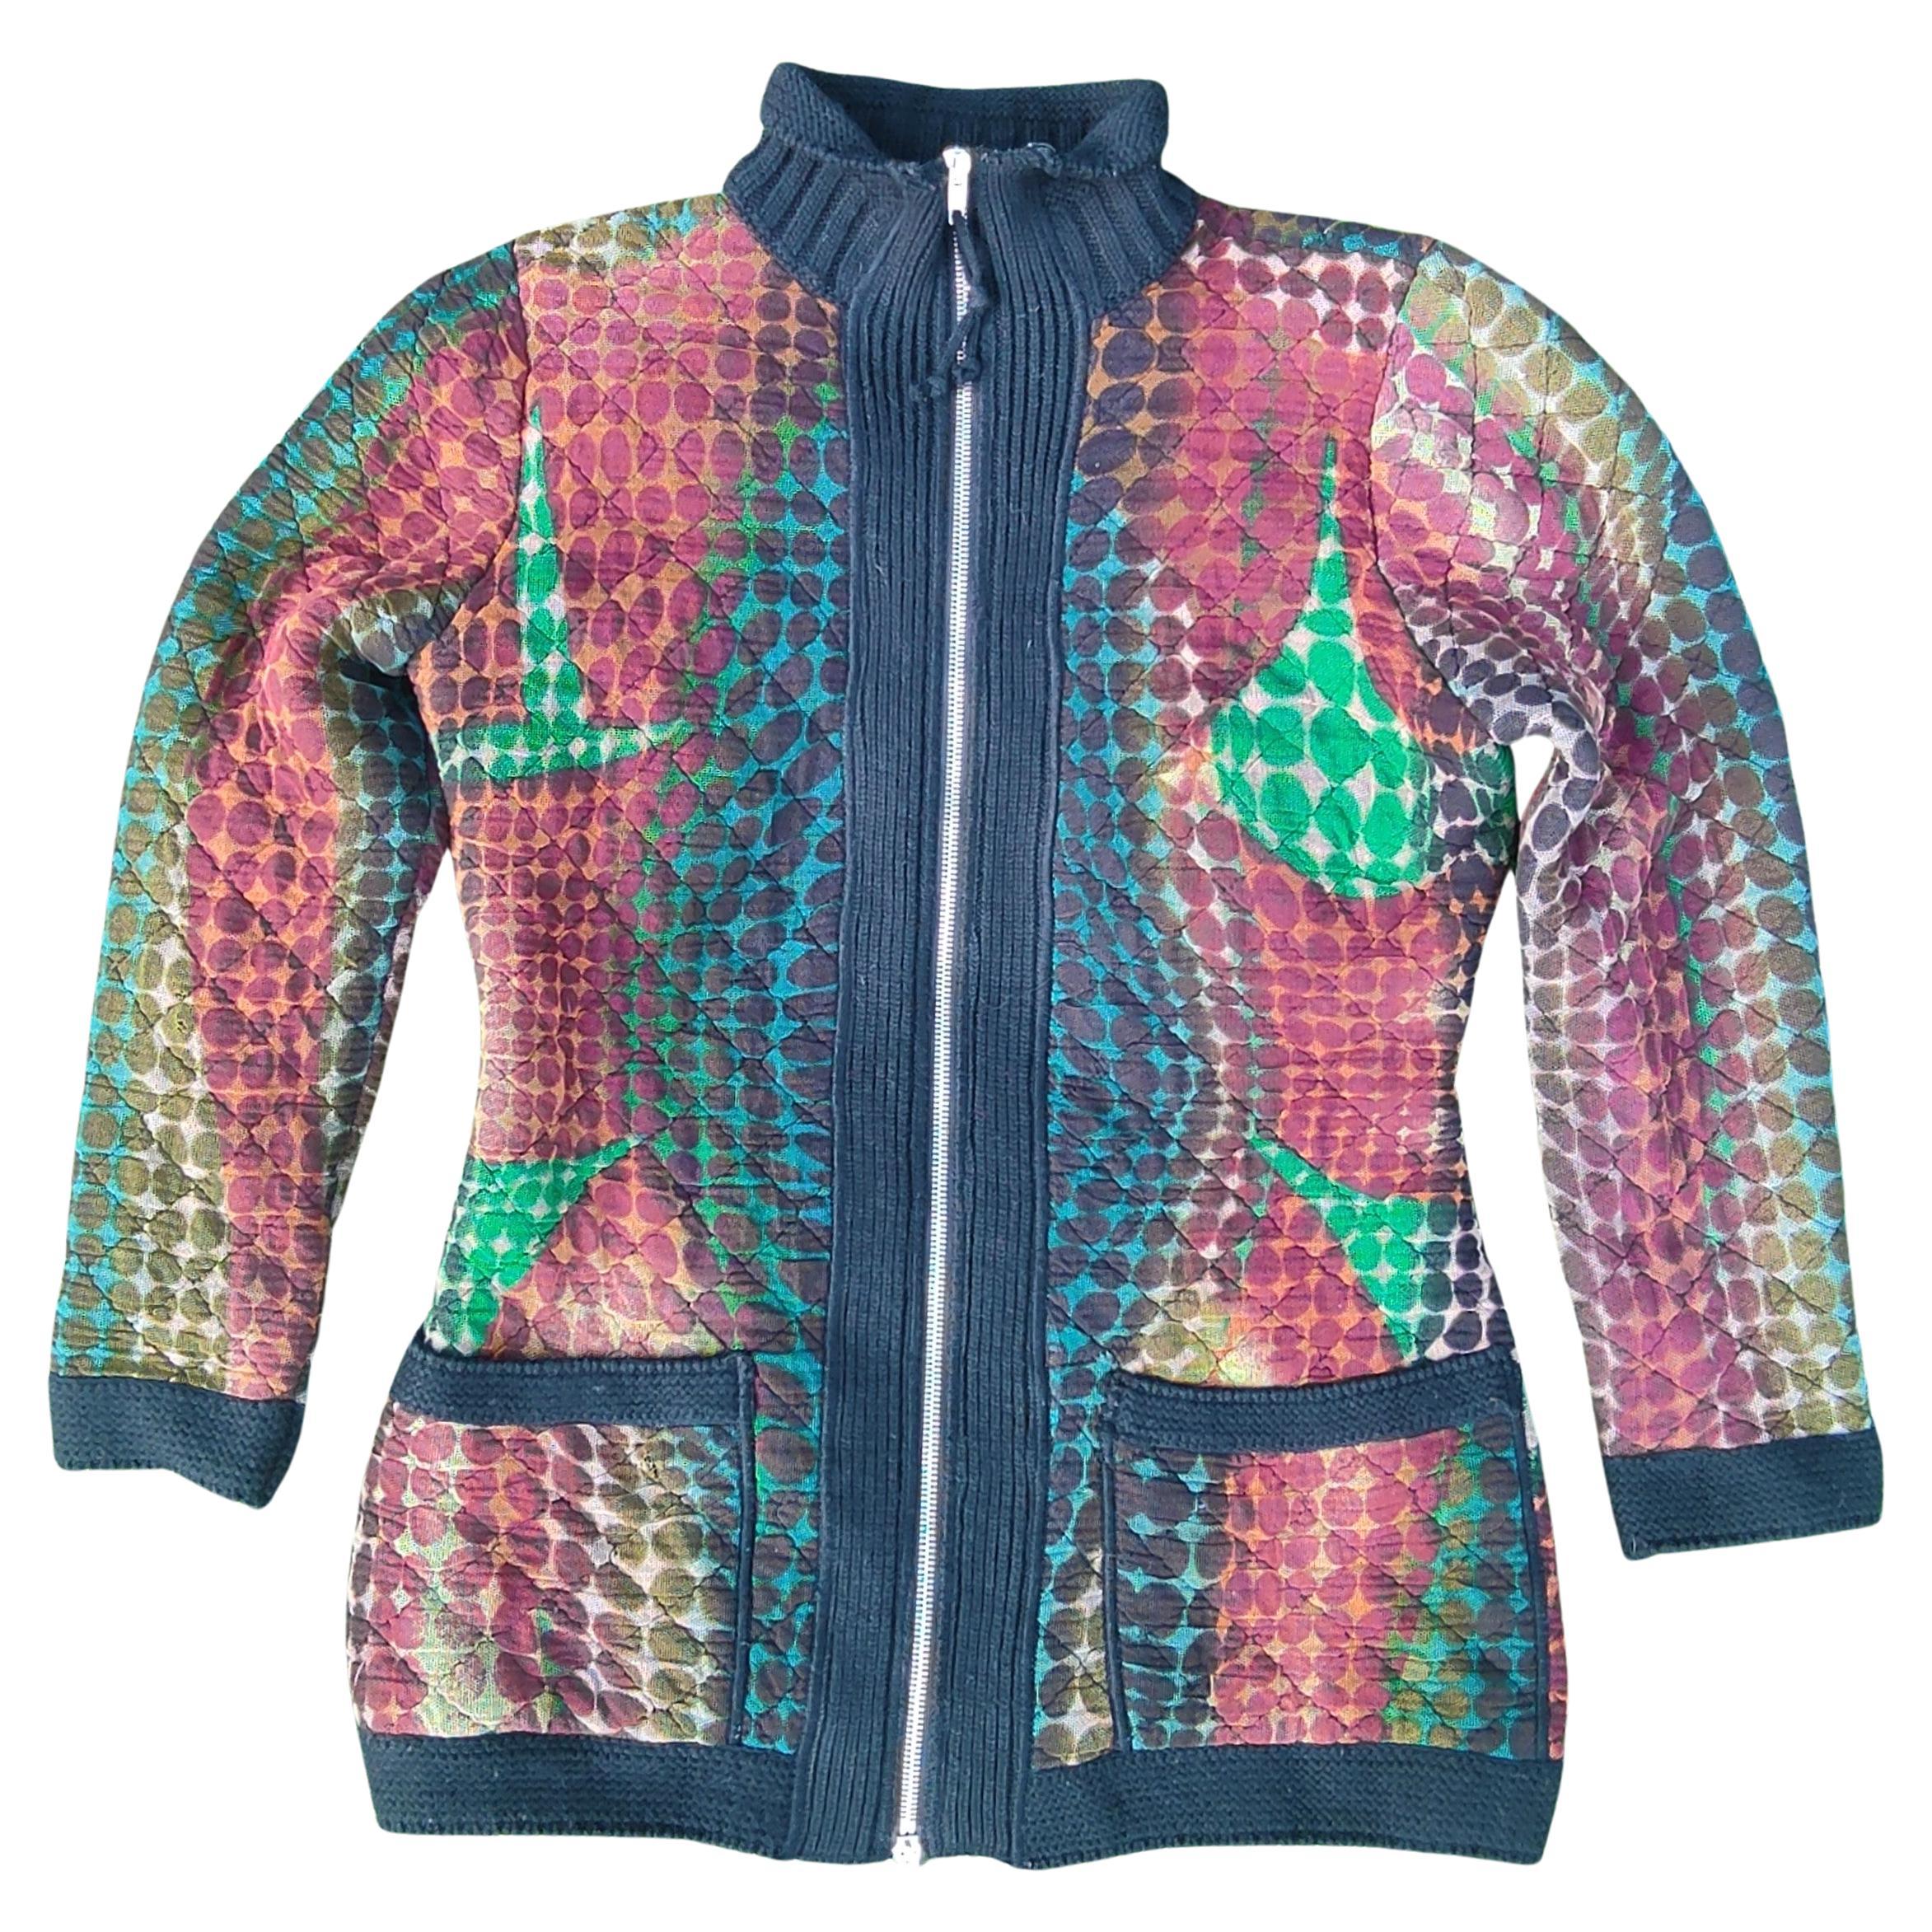 Jean Paul Gaultier Cyberbaba Cyberdot Optical Illusion 1995 Coat Jacket Dress